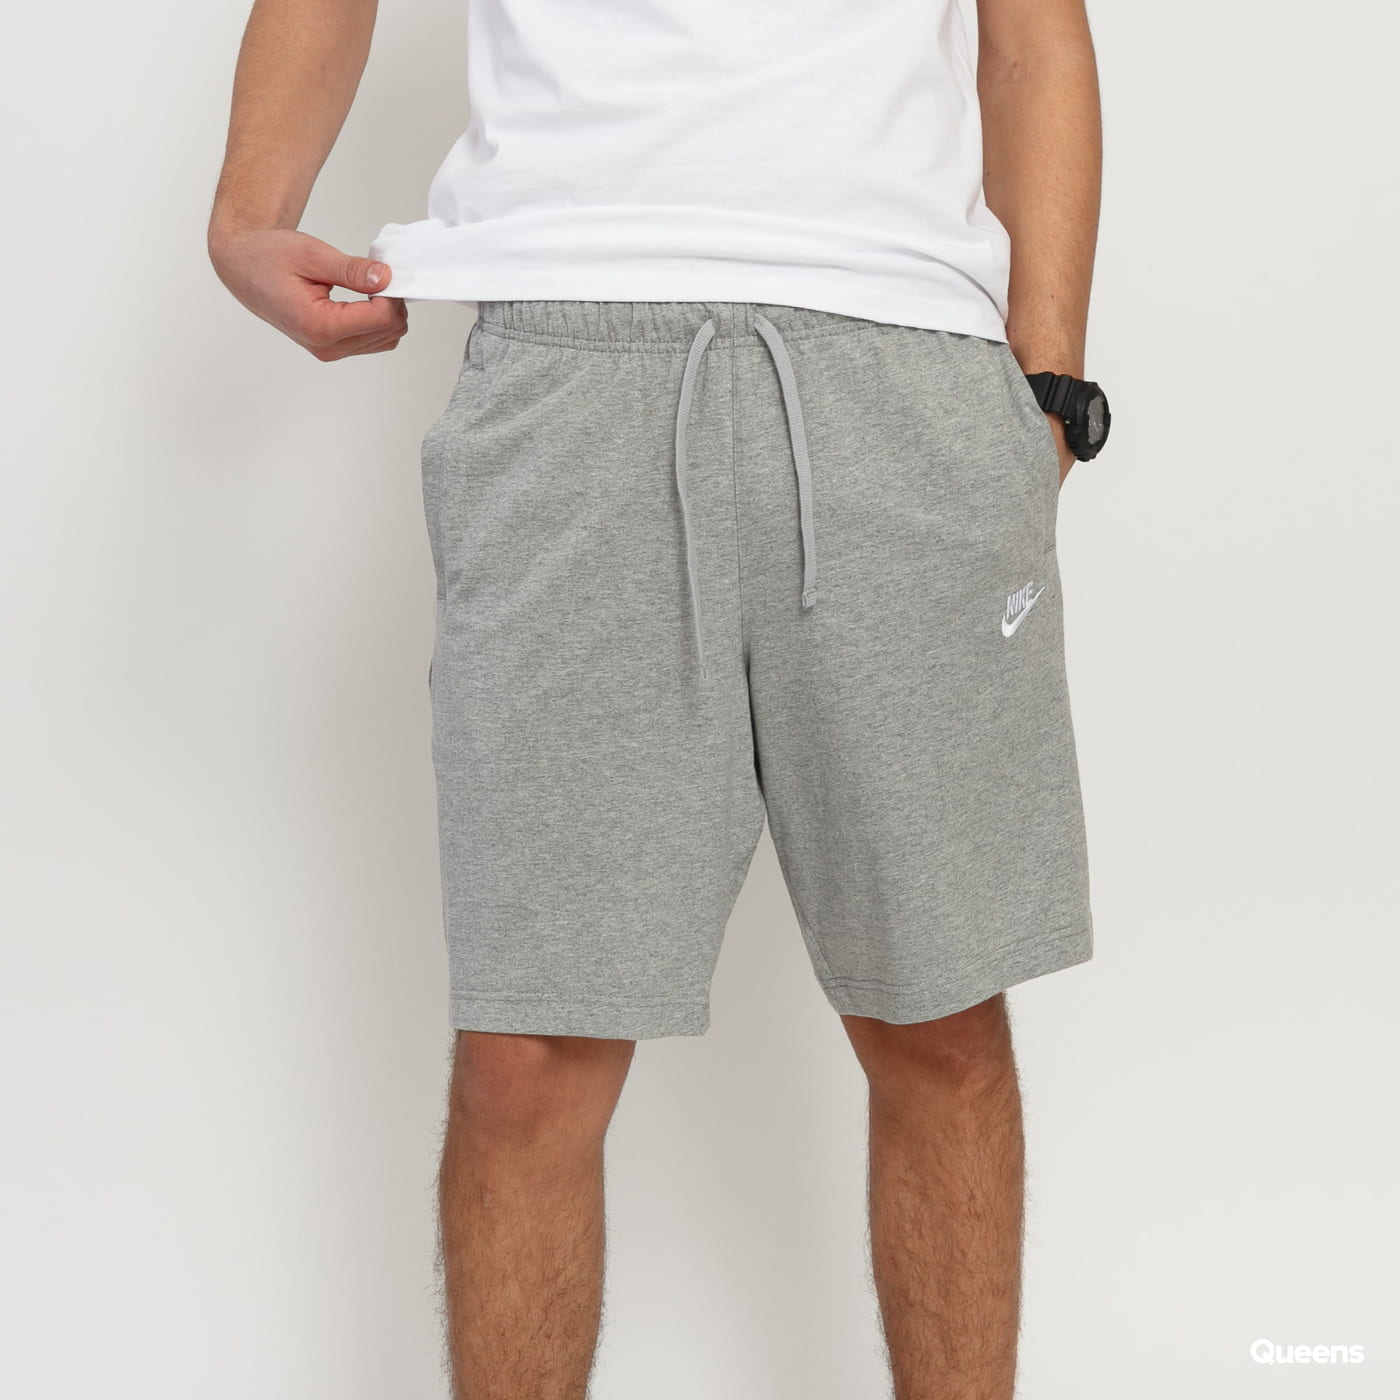 nike grey sweatpant shorts